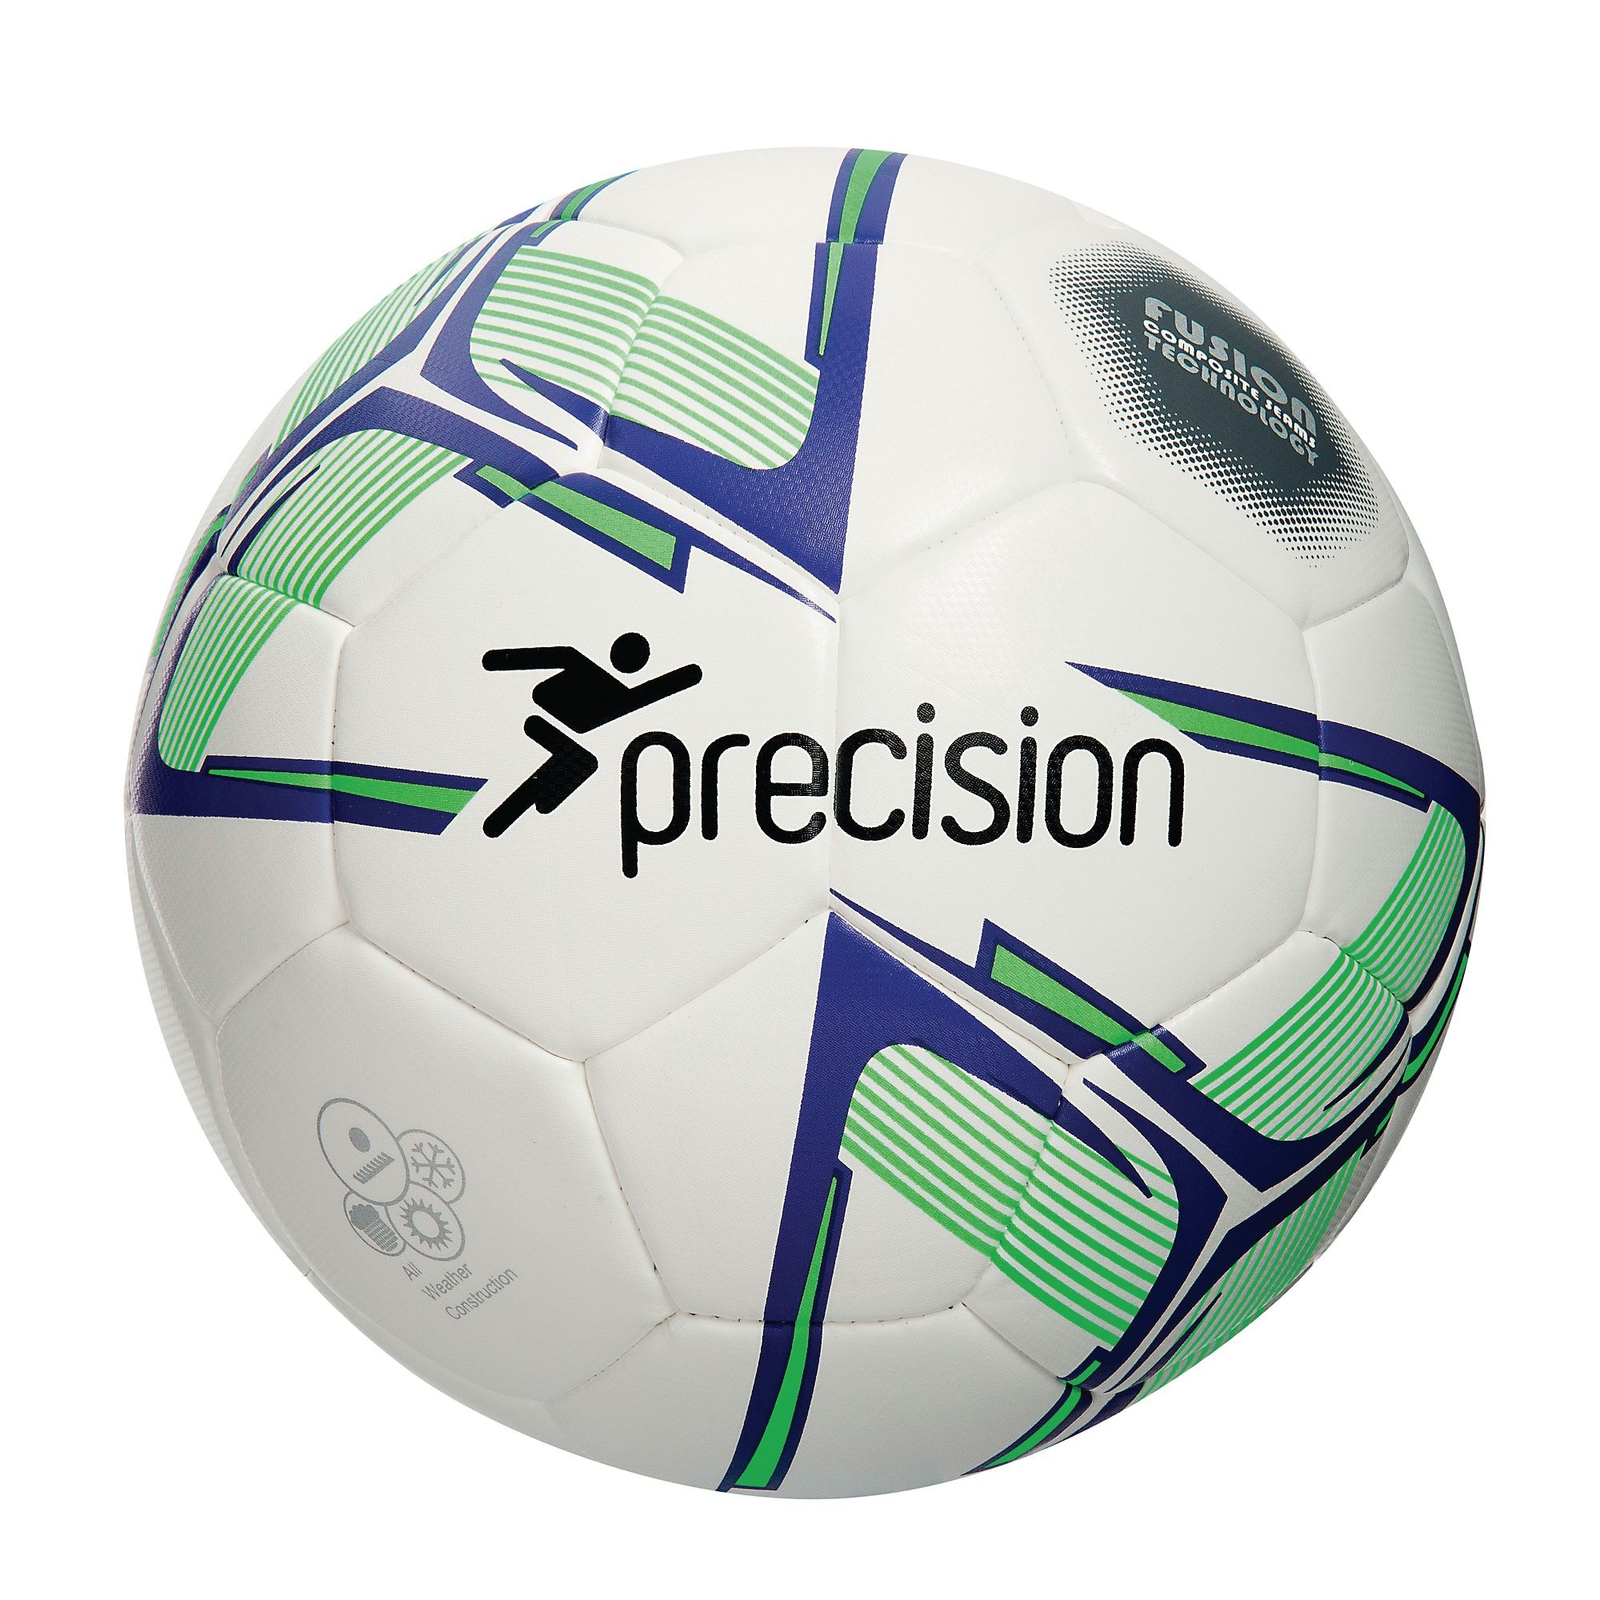 Precision Rotario Match Football, White/Purple - Size 5